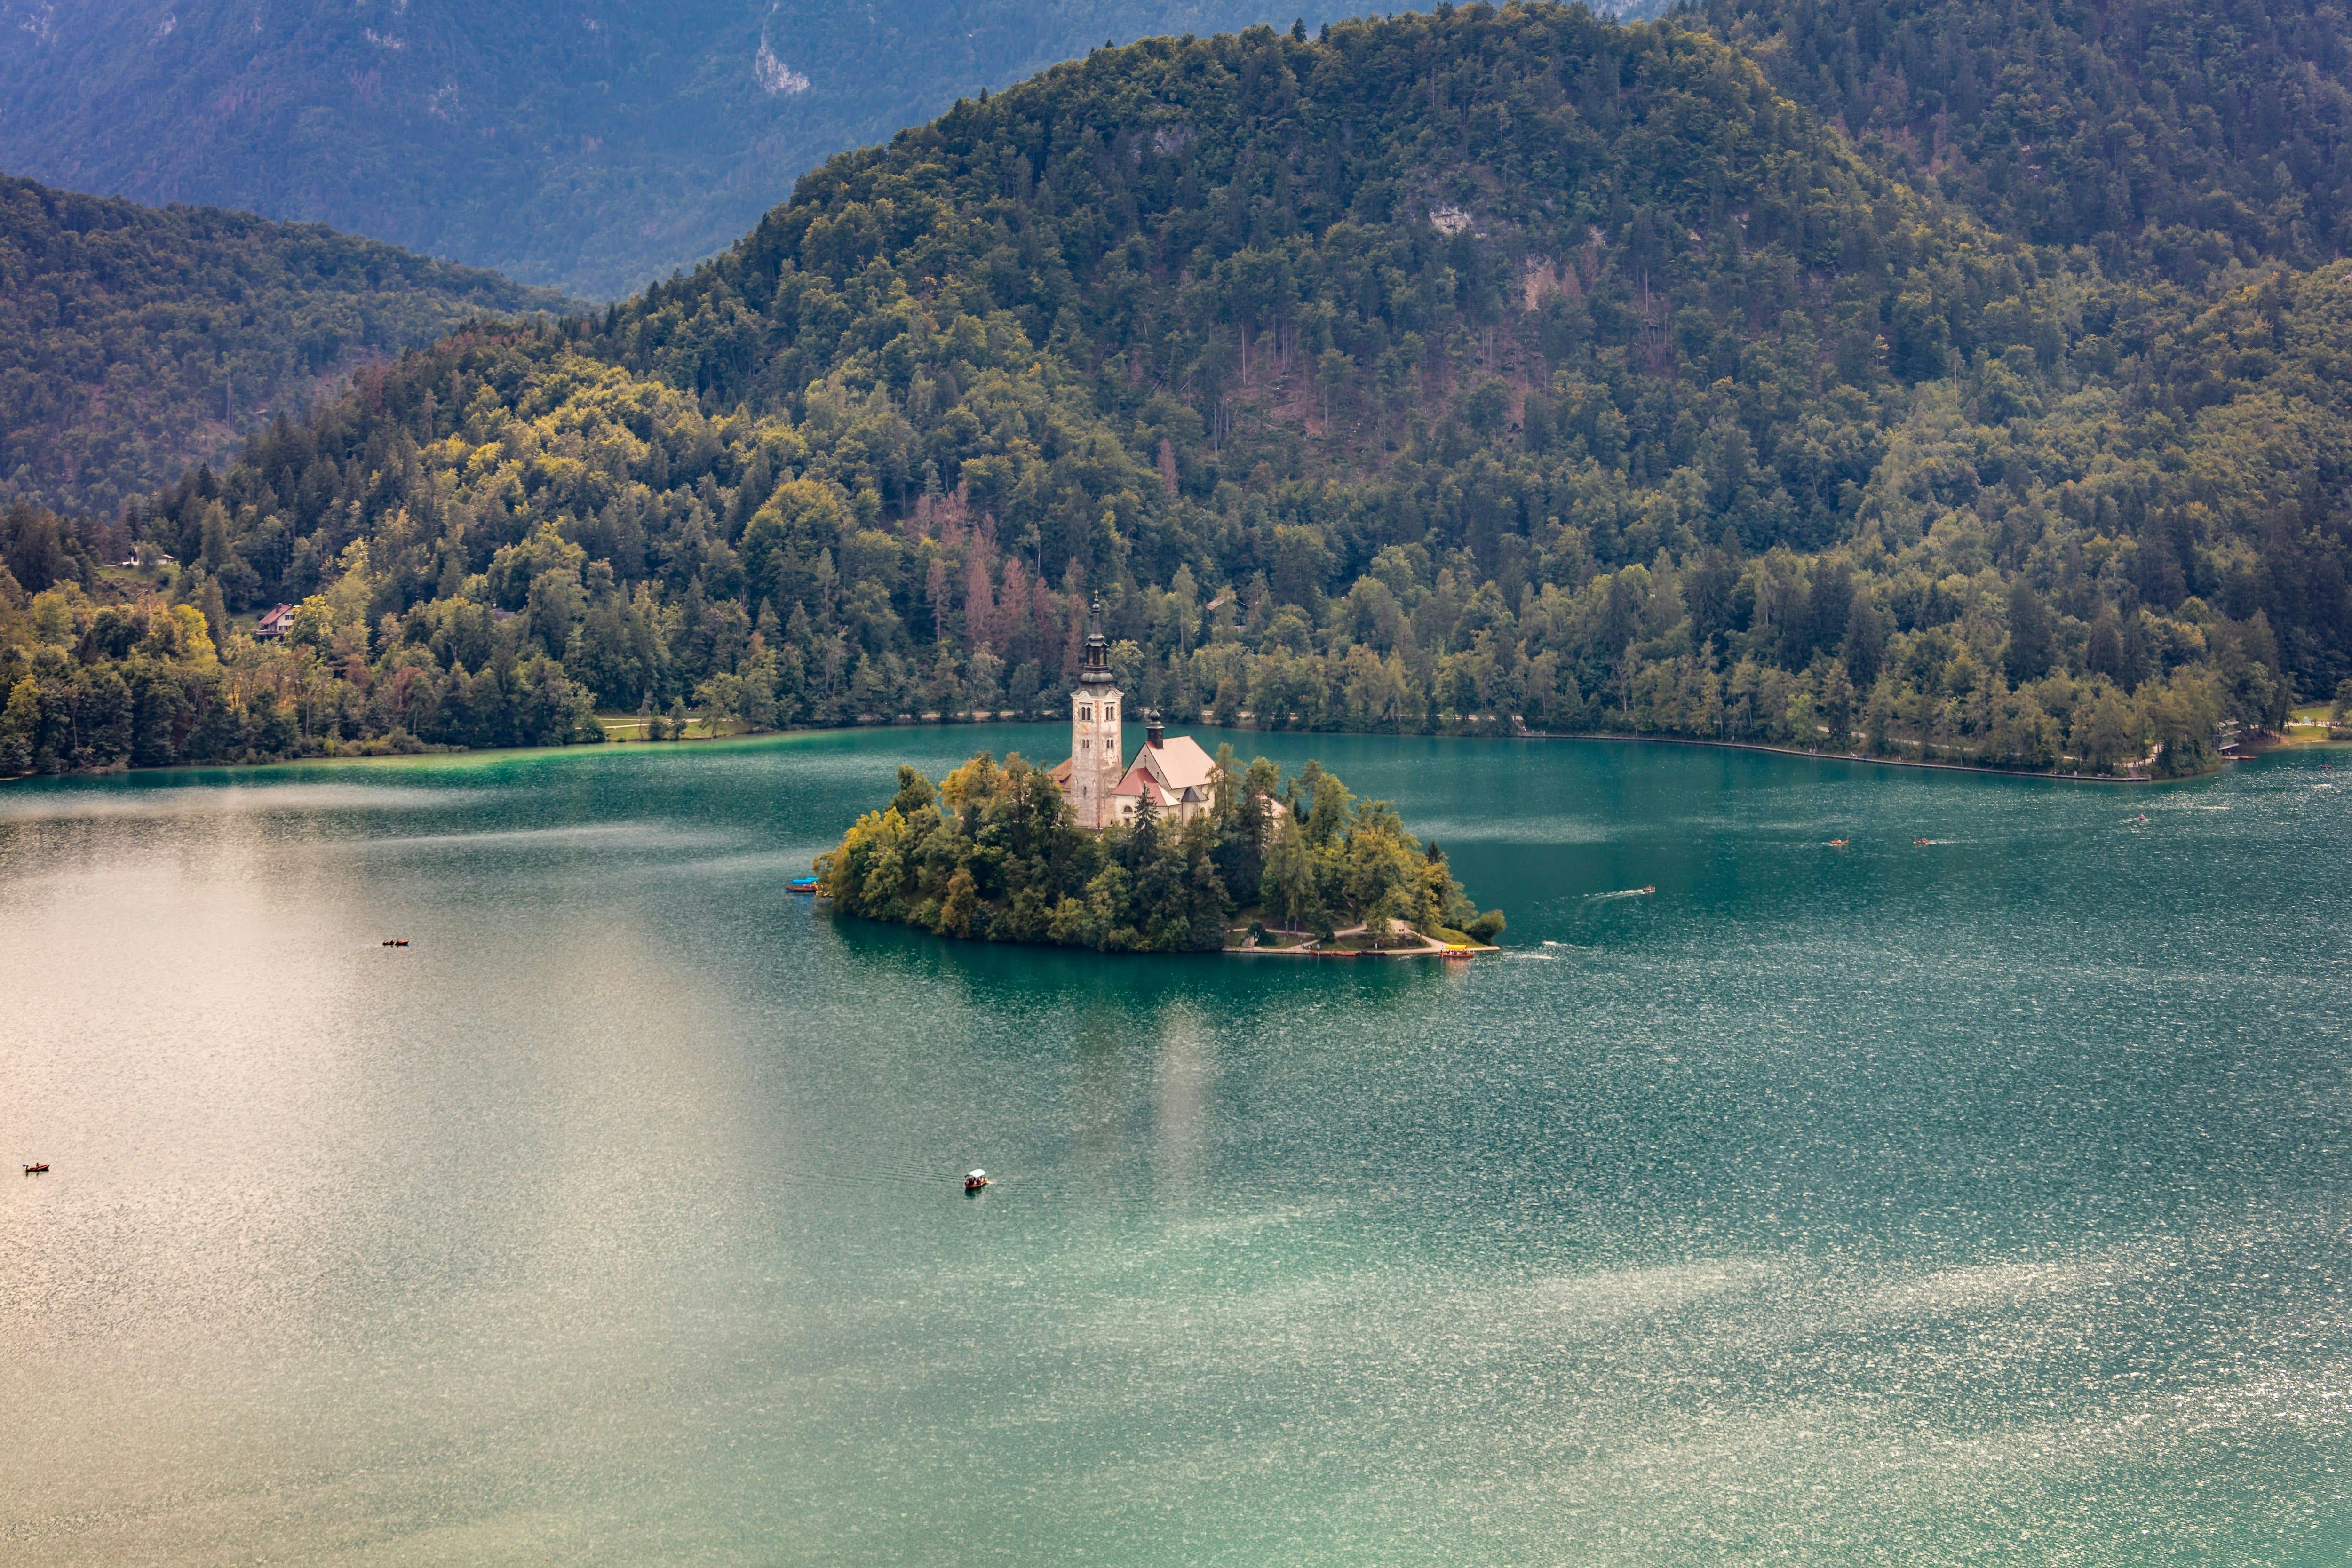 Visite d'été du lac de Bled avec le château de Bled et balade en bateau